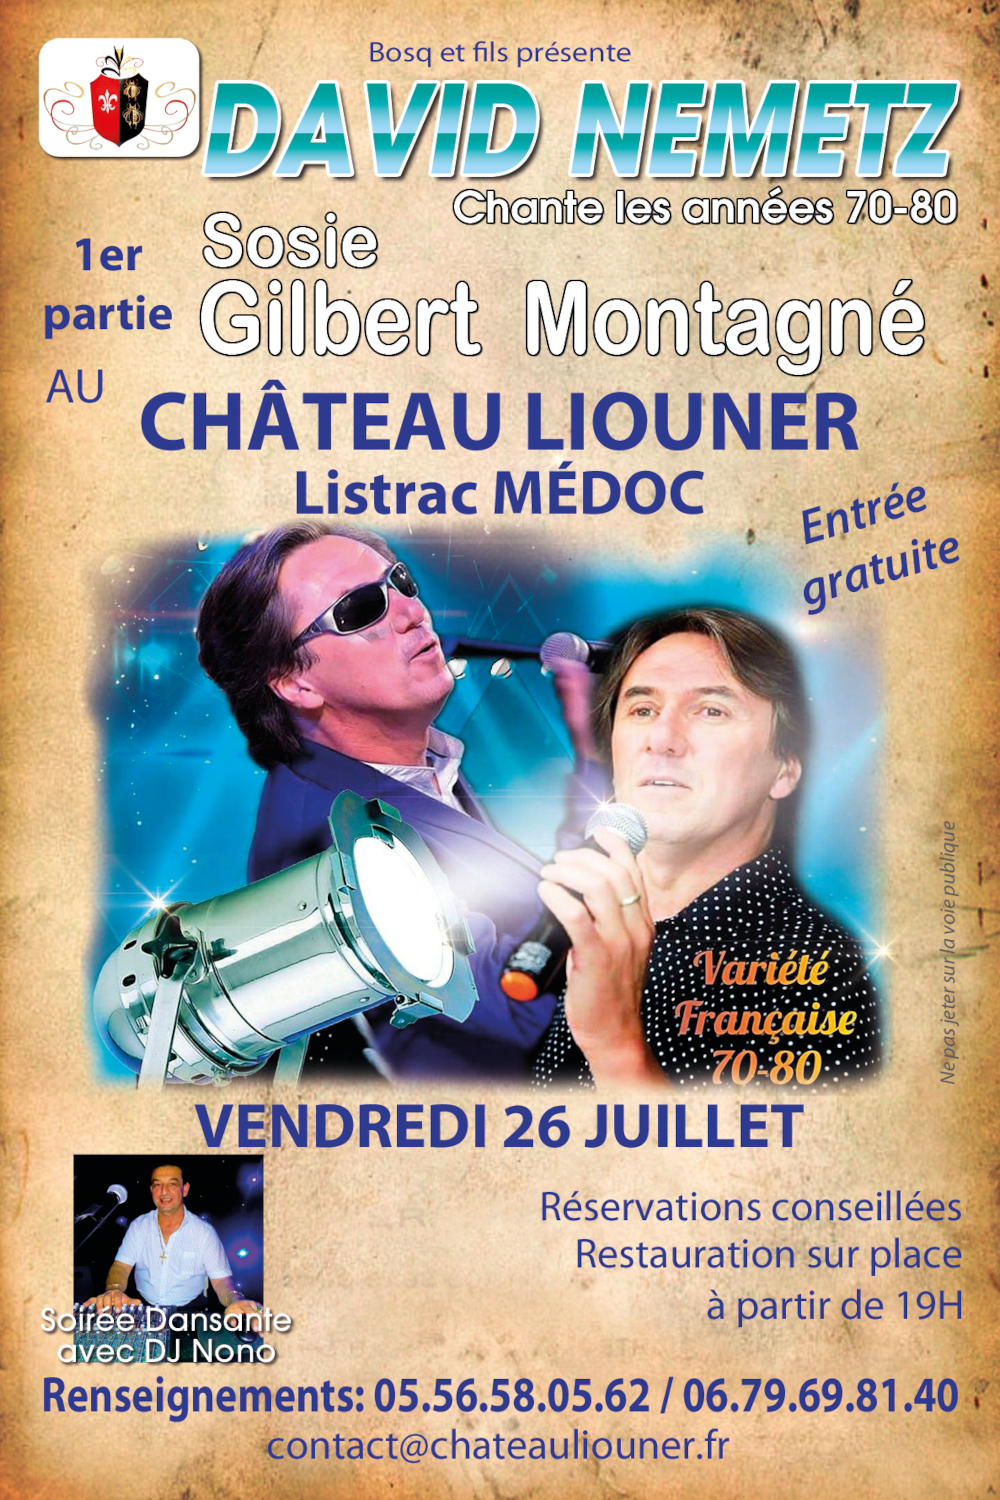 Soirée animation au Château Liouner. Spectacle du Sosie officiel de Gilbert Montagné, David Nemetz.